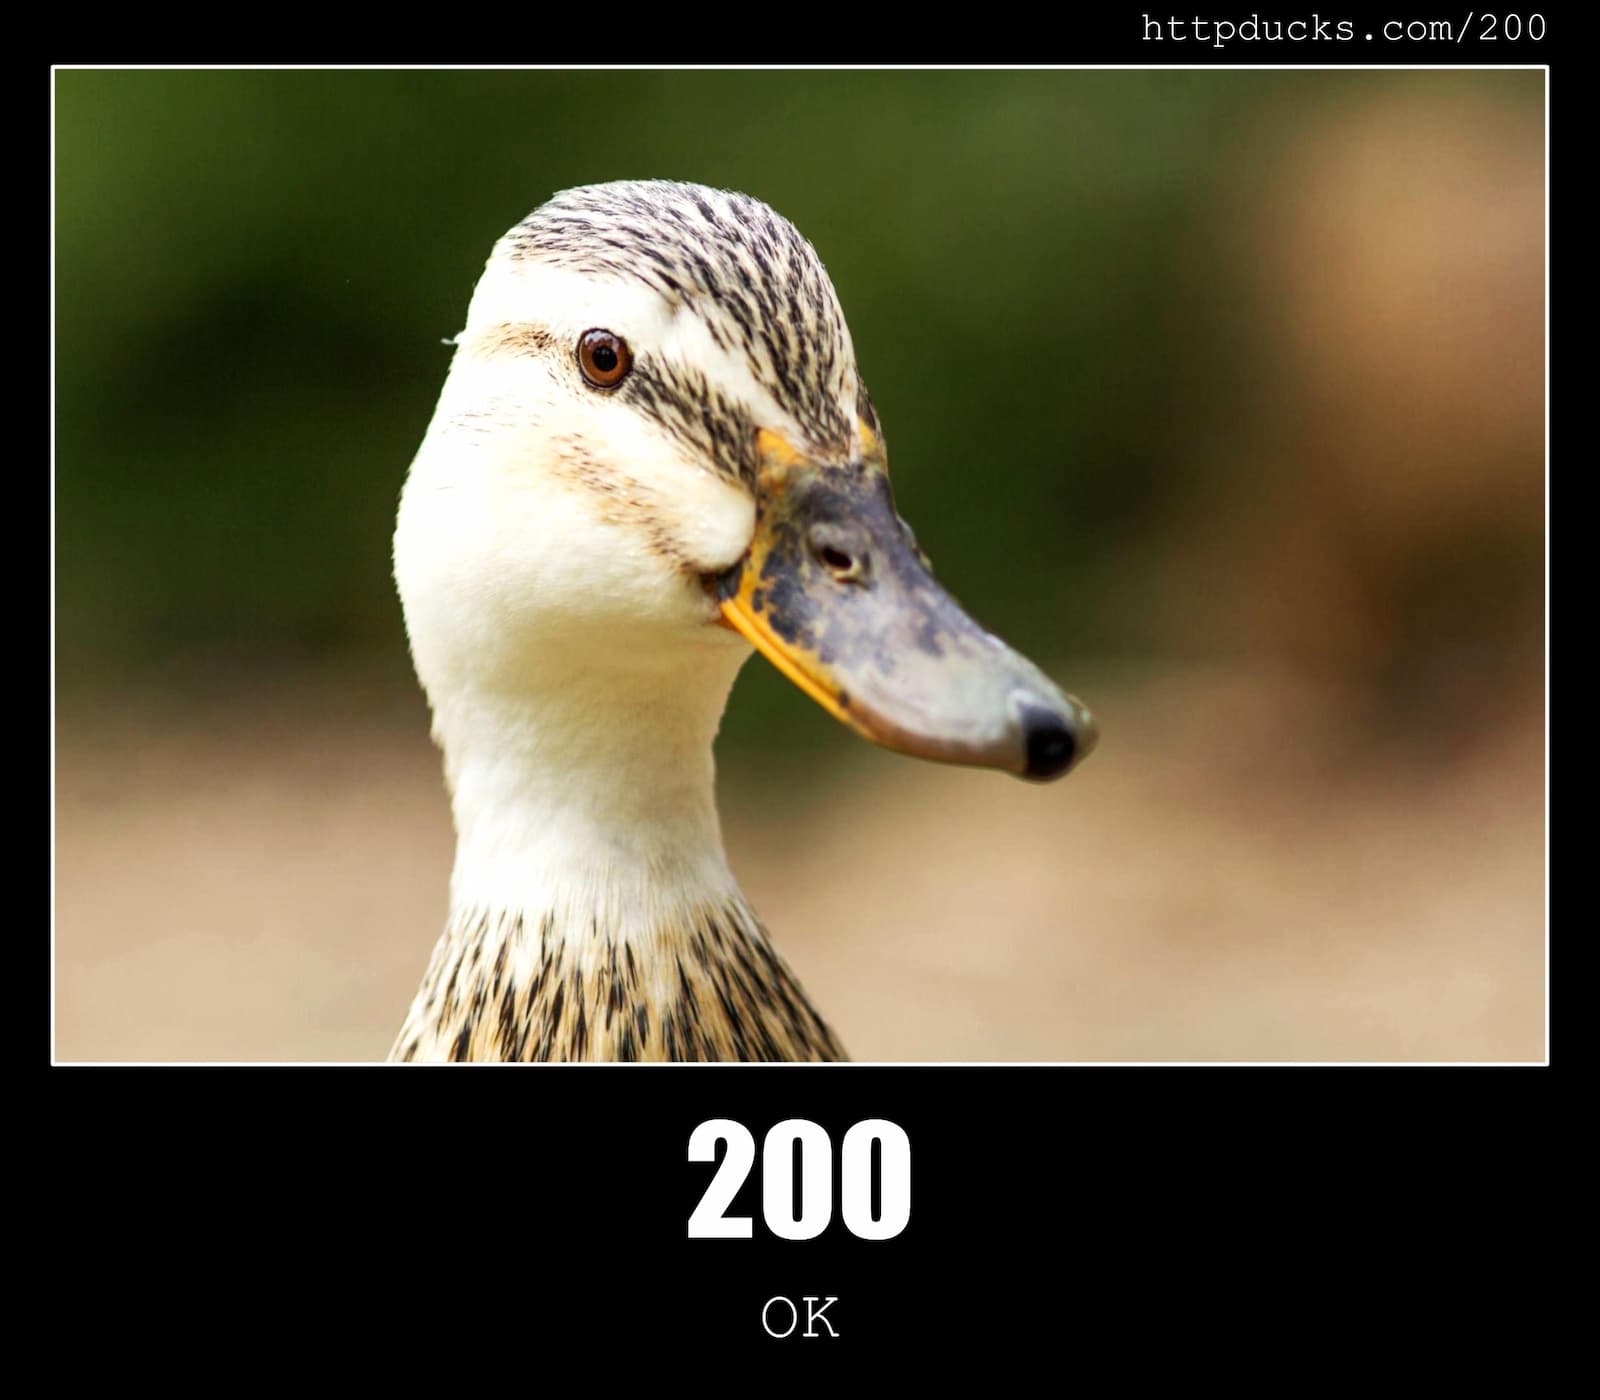 HTTP Status Code 200 OK & Ducks